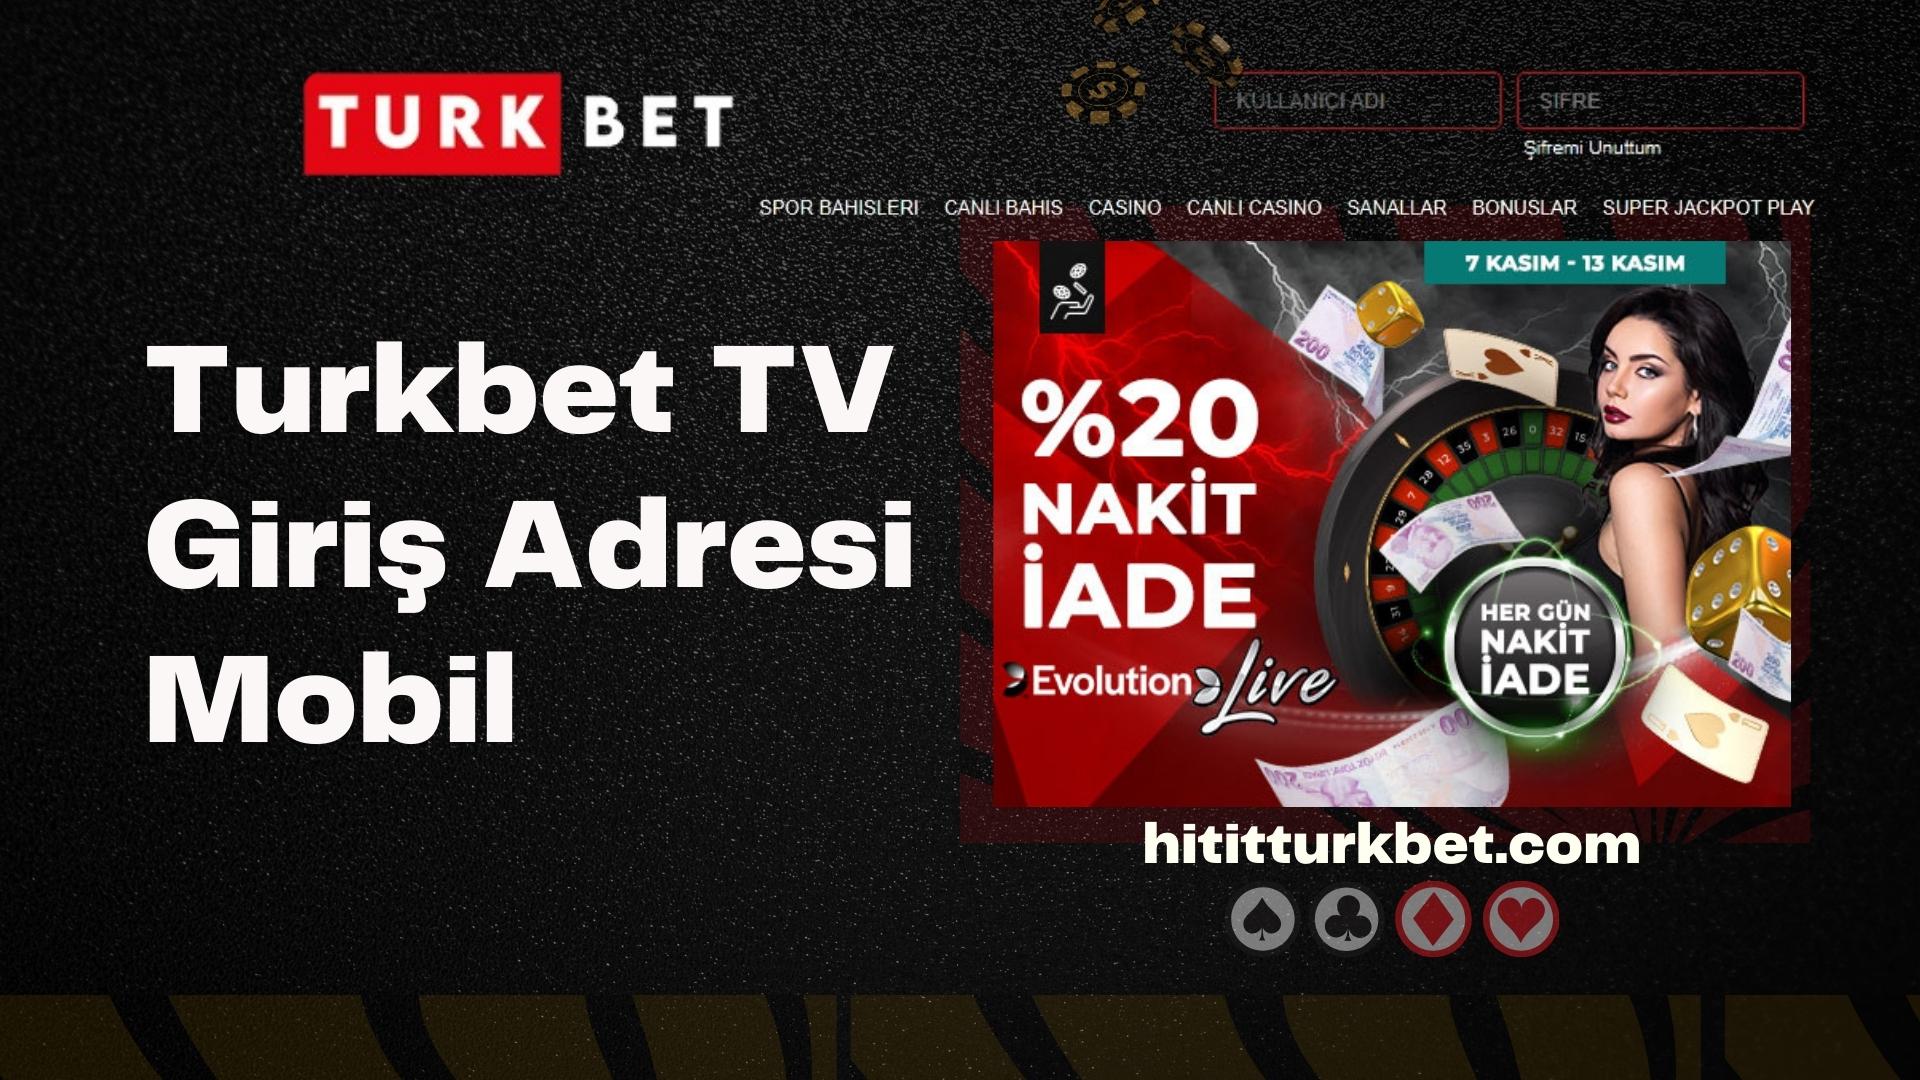 Turkbet TV Giriş Adresi Mobil